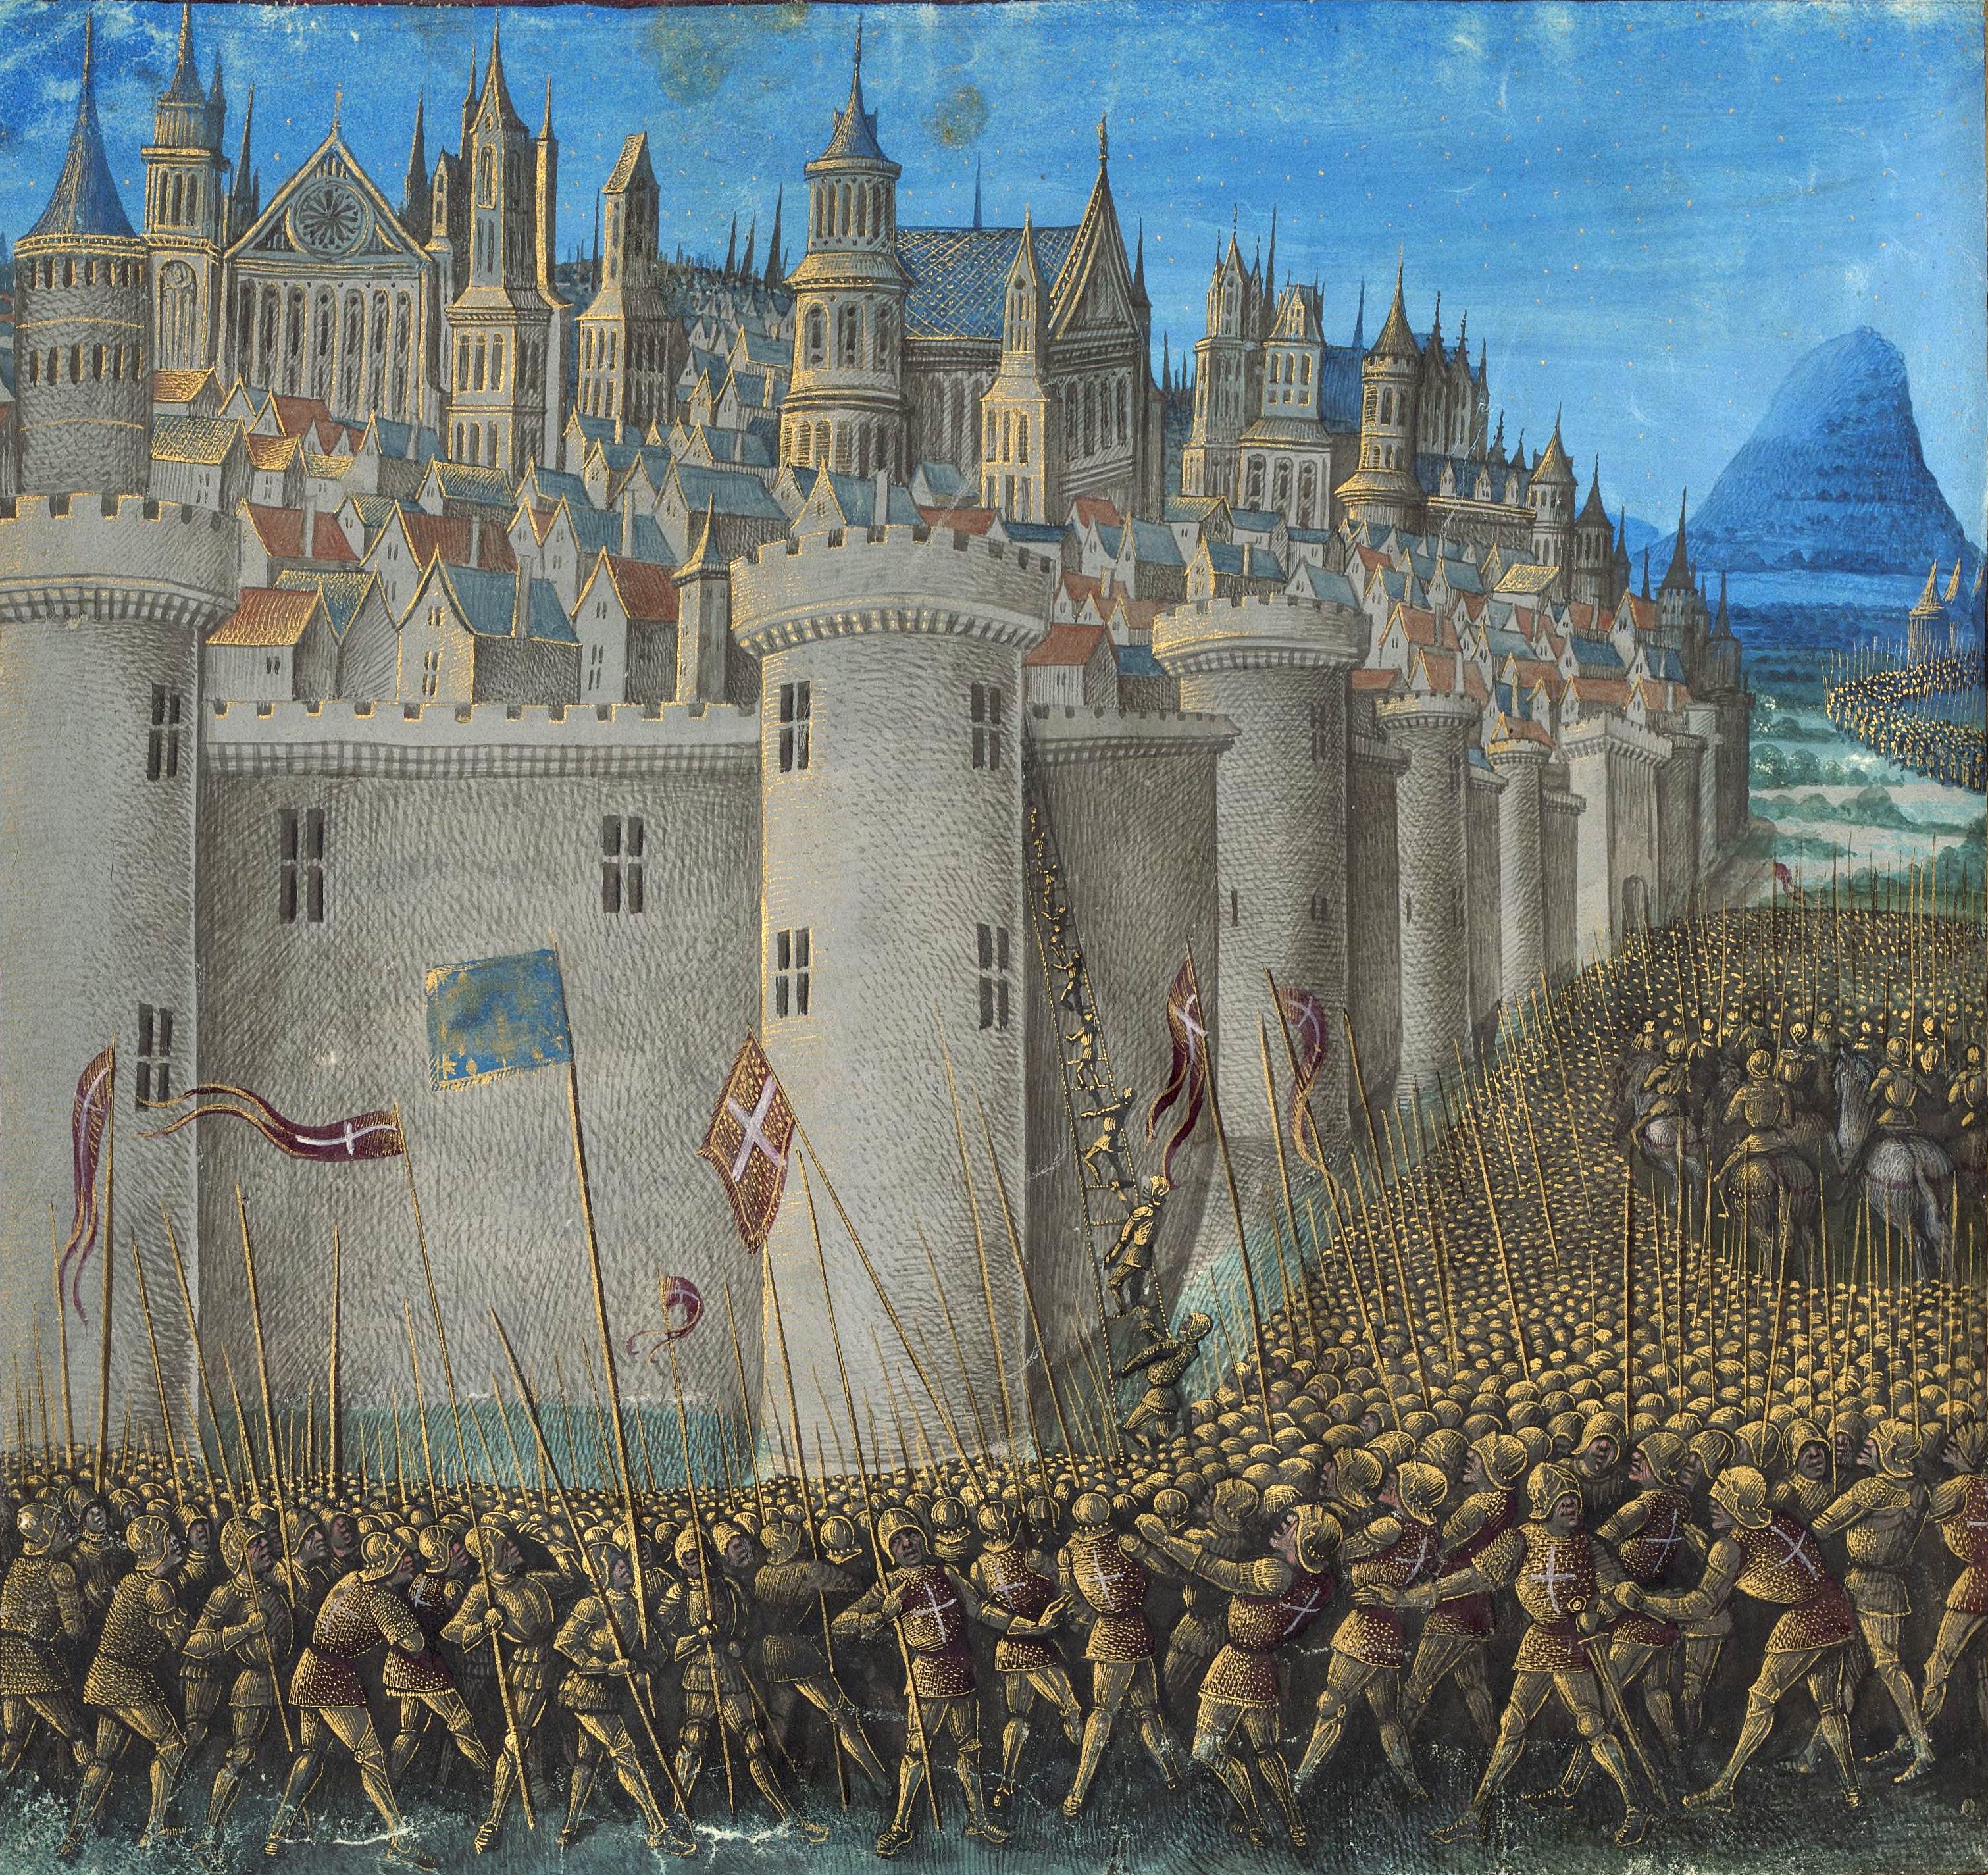 Representación del asedio de Antioquía durante la primera cruzada en una miniatura medieval cruzadas wikimedia